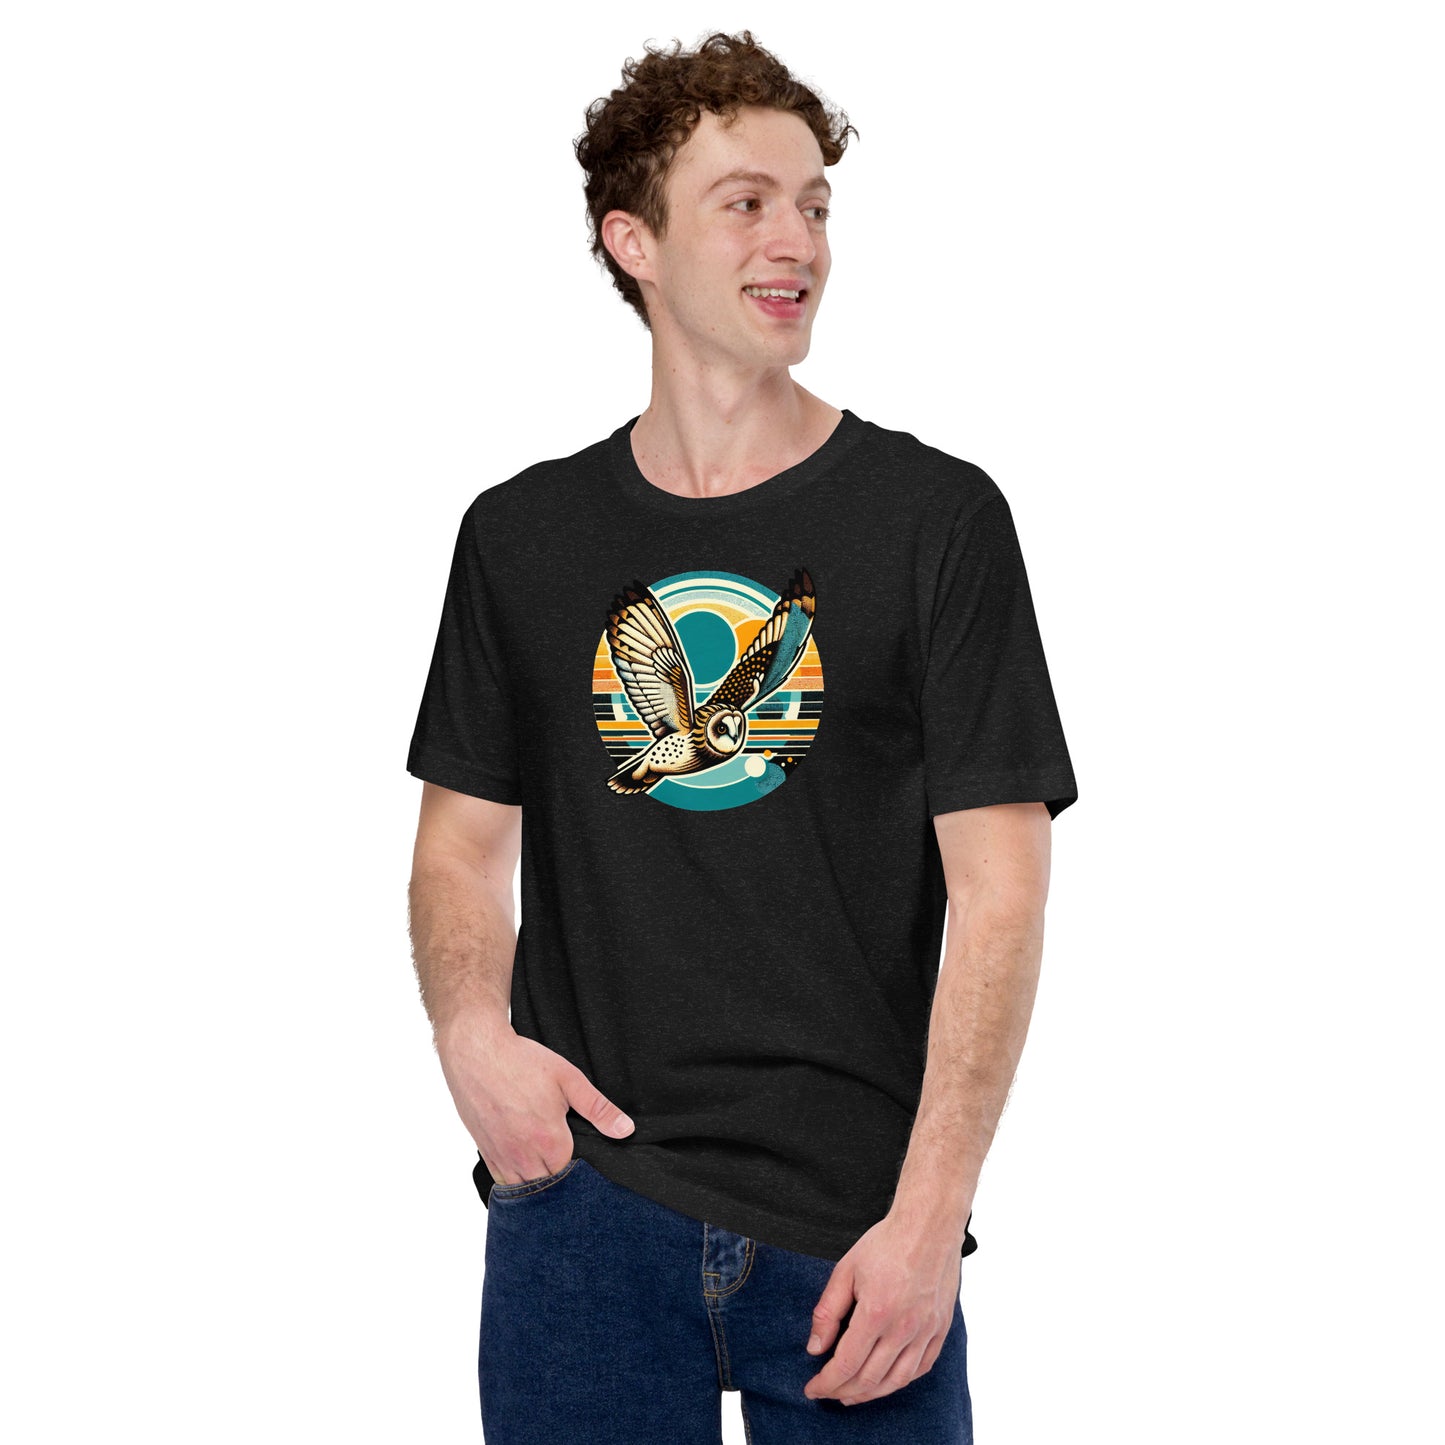 Short-Eared Owl Lightweight Cotton Unisex T-Shirt